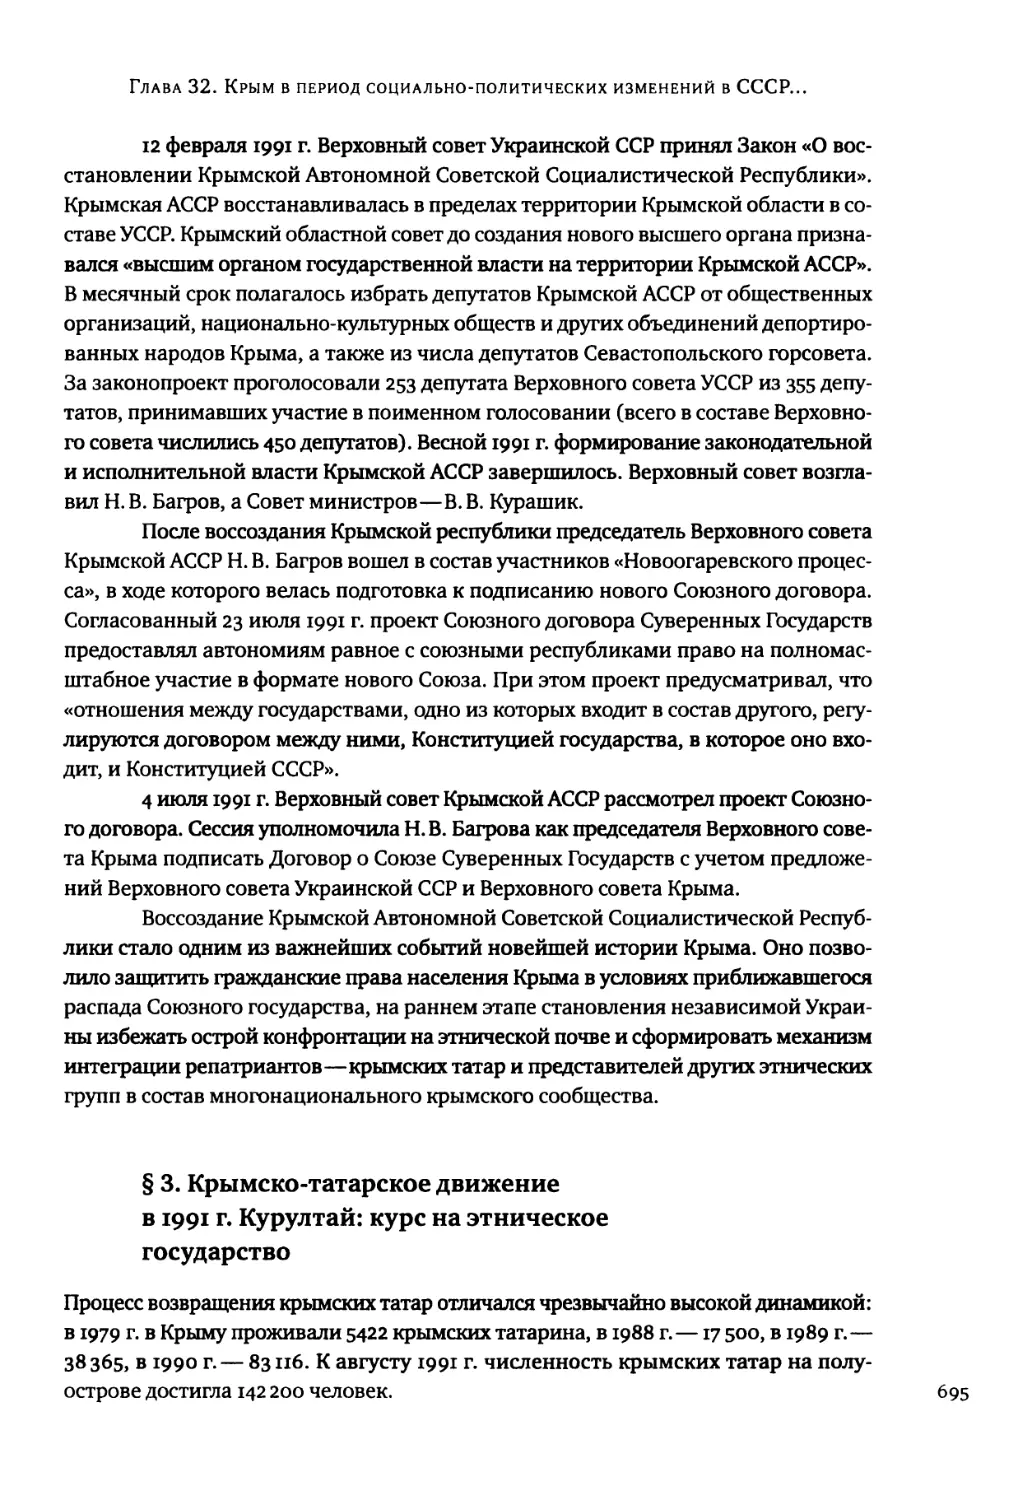 § 3. Крымско-татарское движение в 1991 г. Курултай: курс на этническое государство